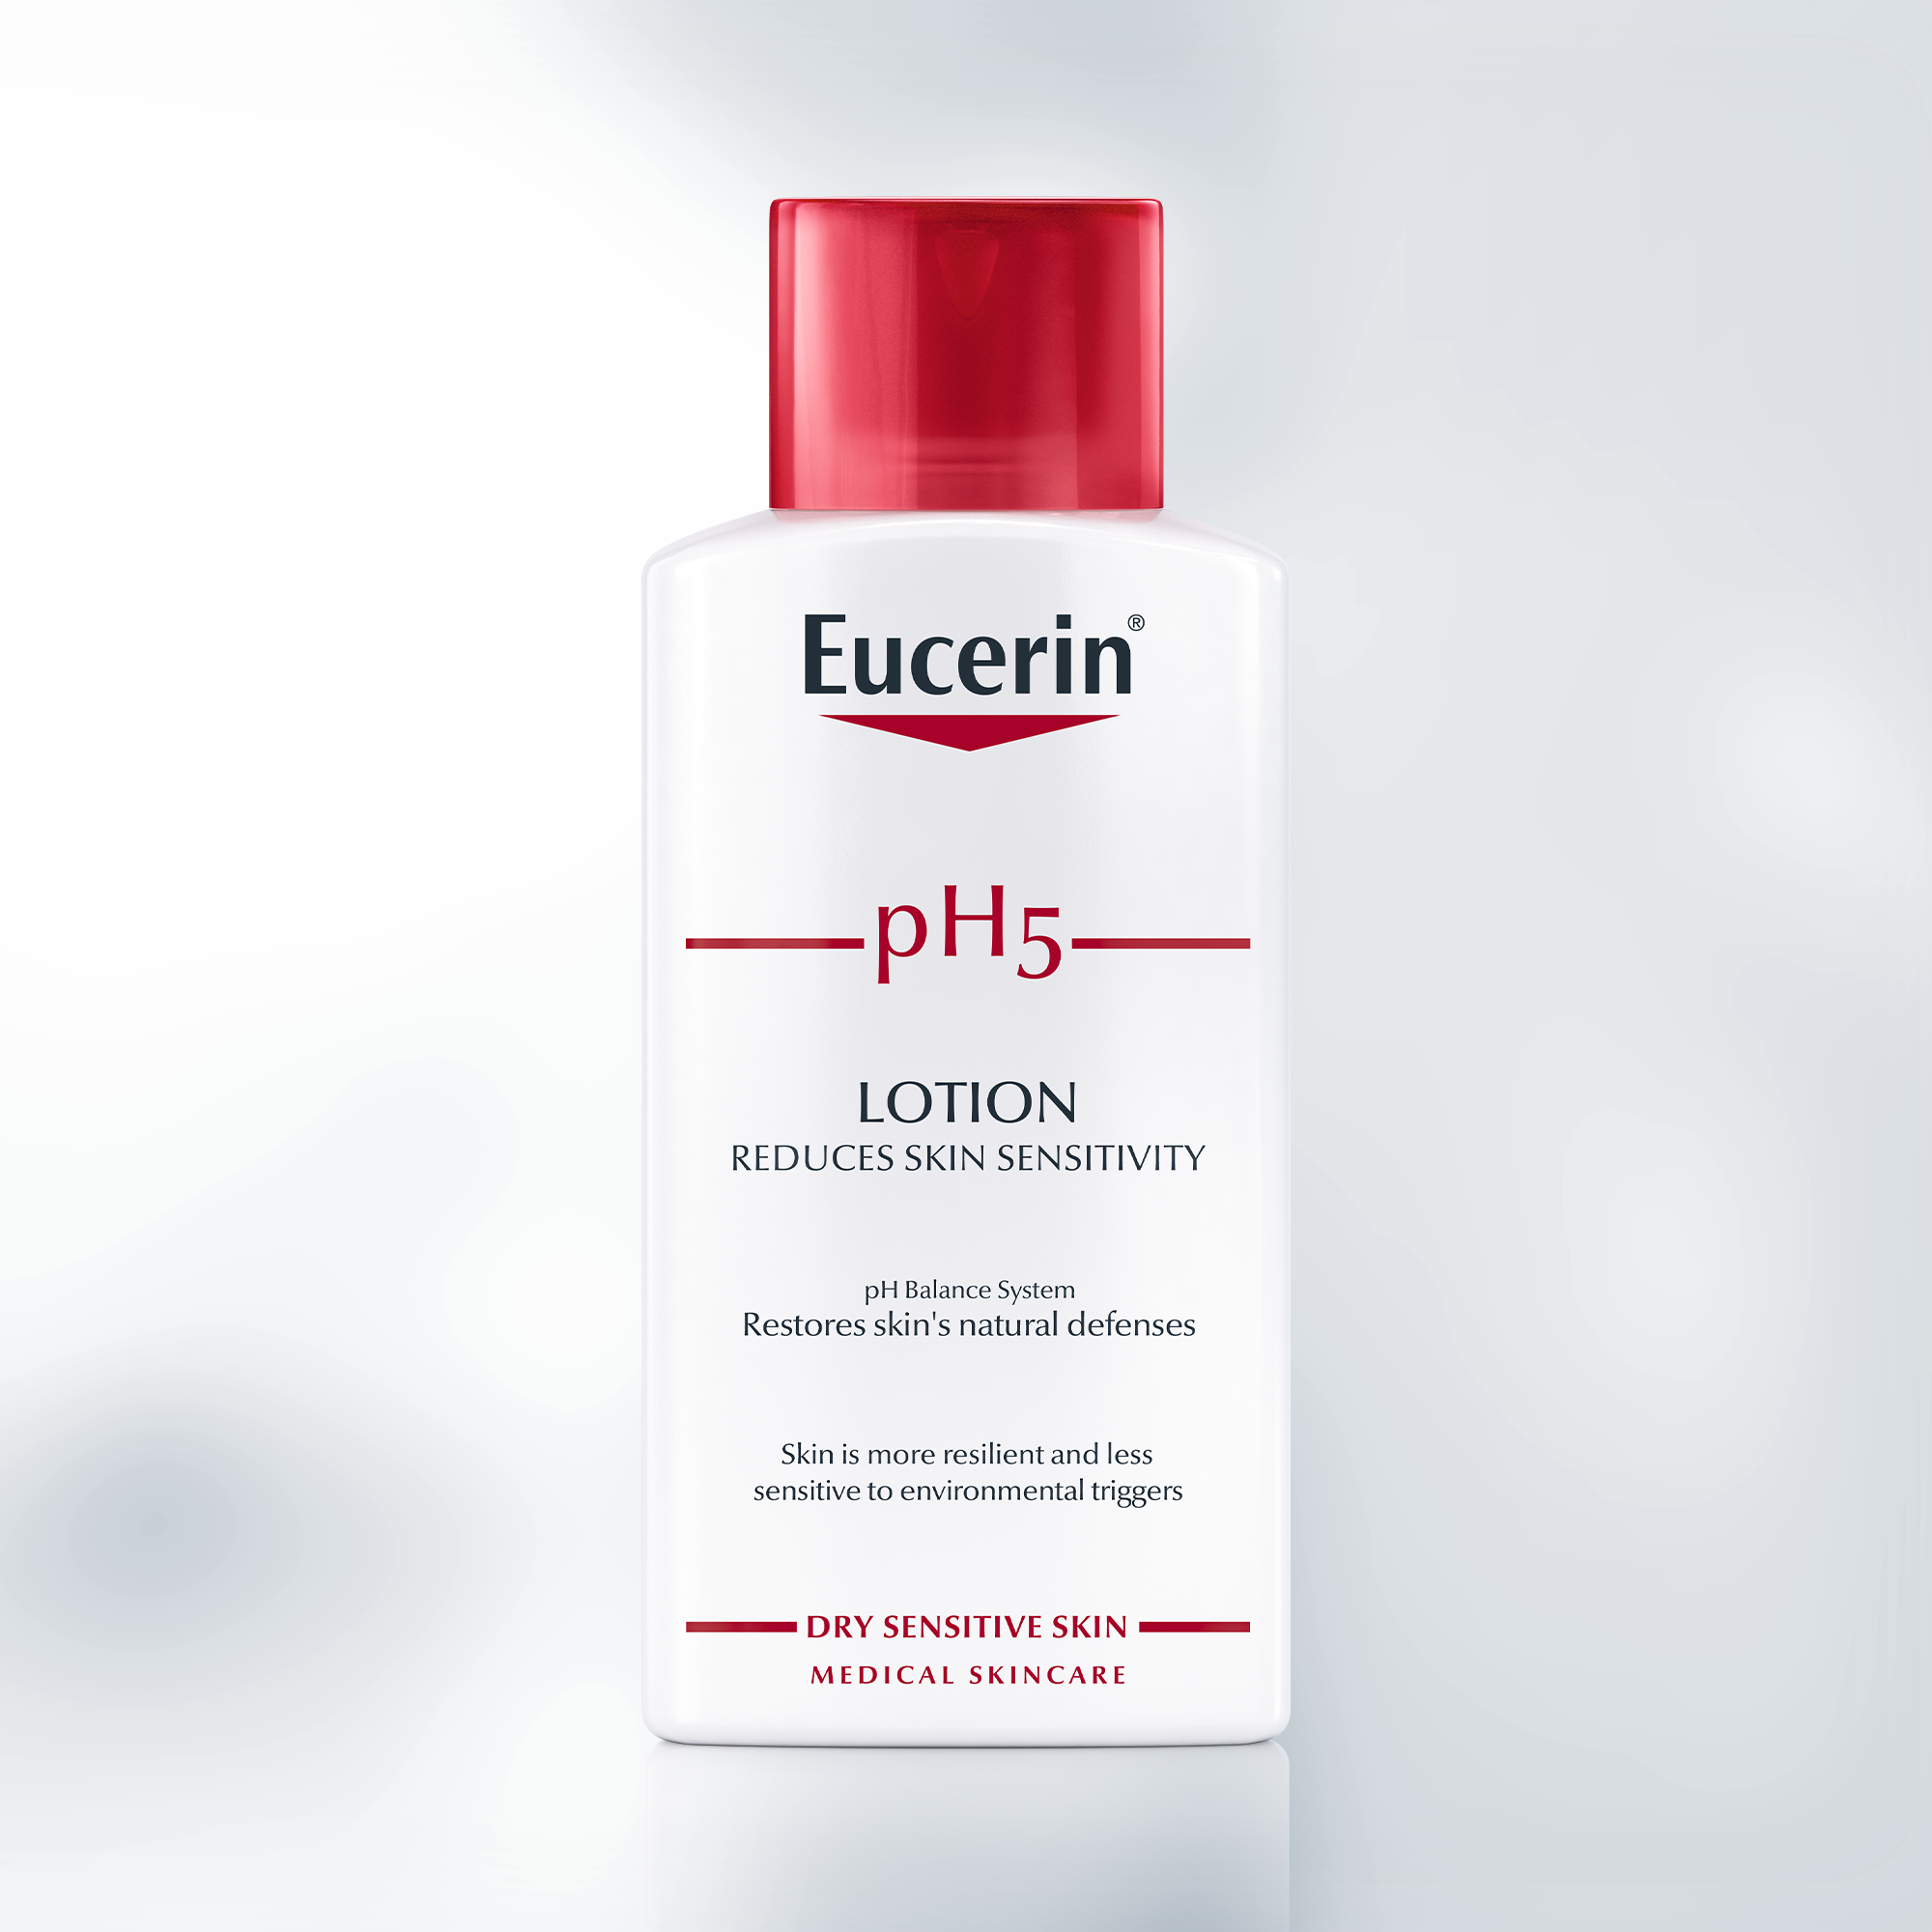 Eucerin pH5 Lotion